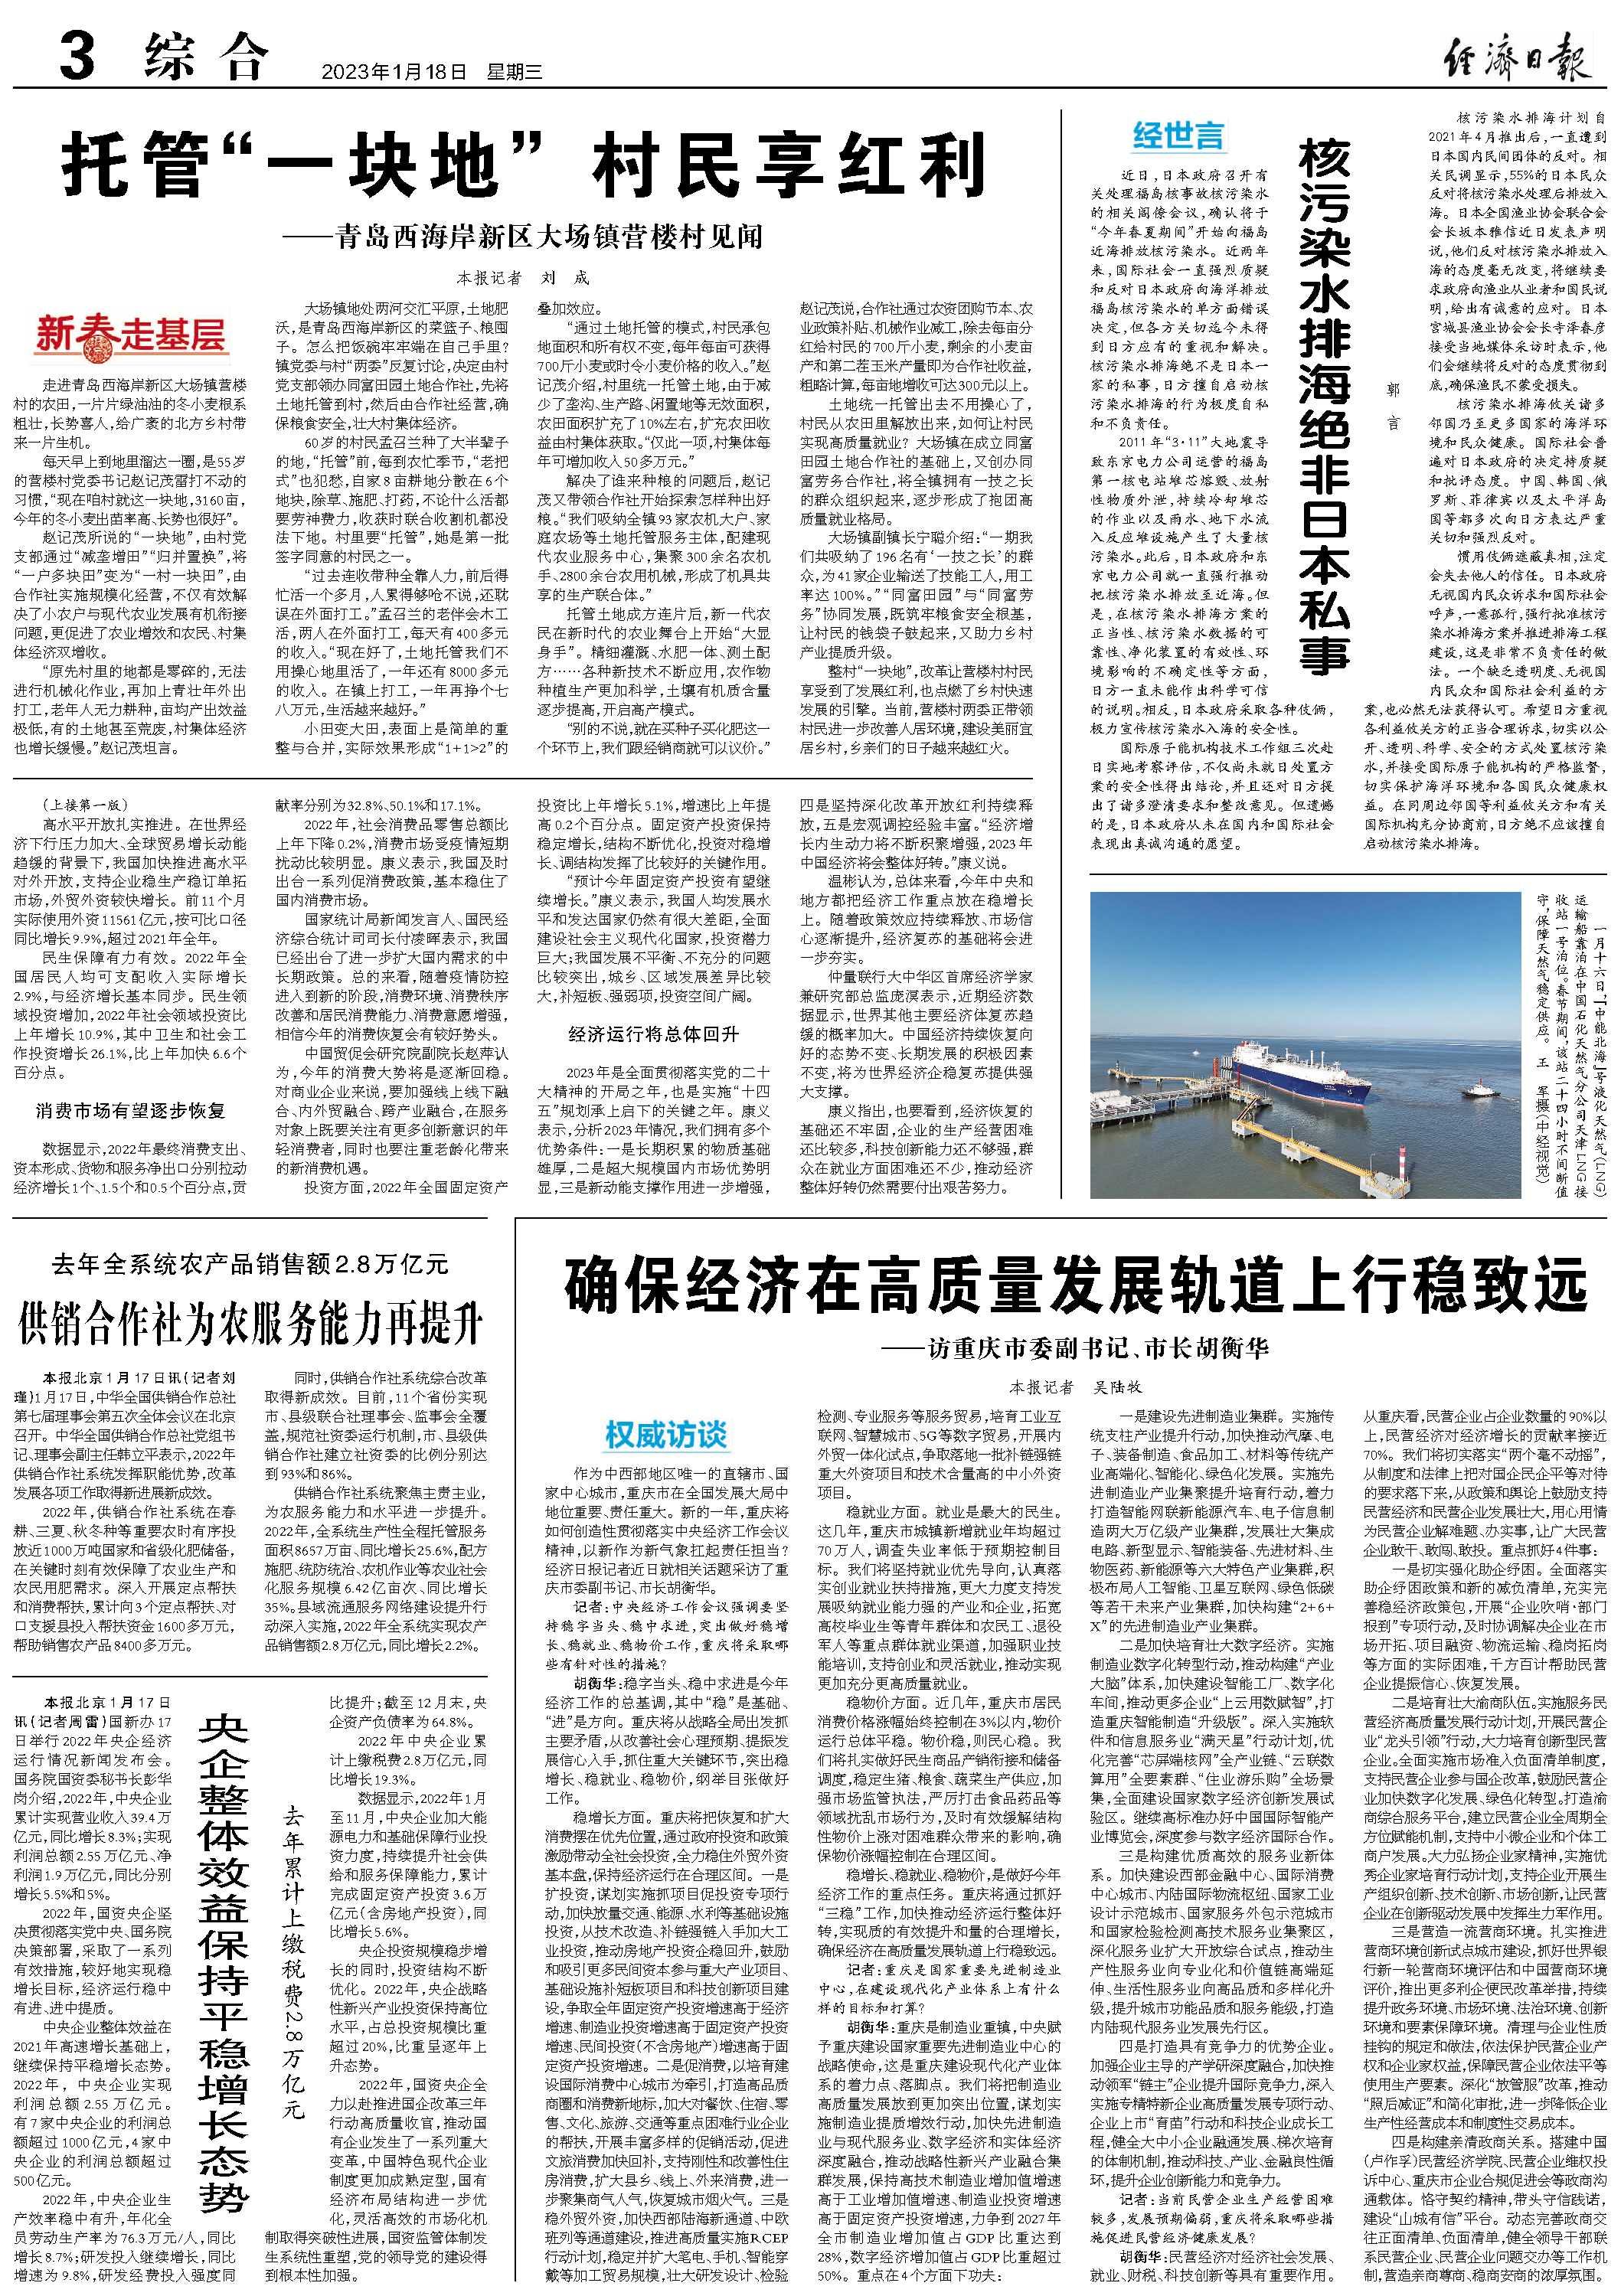 確保經濟在高質量發展軌道上行穩致遠 ——訪重慶市委副書記、市長胡衡華